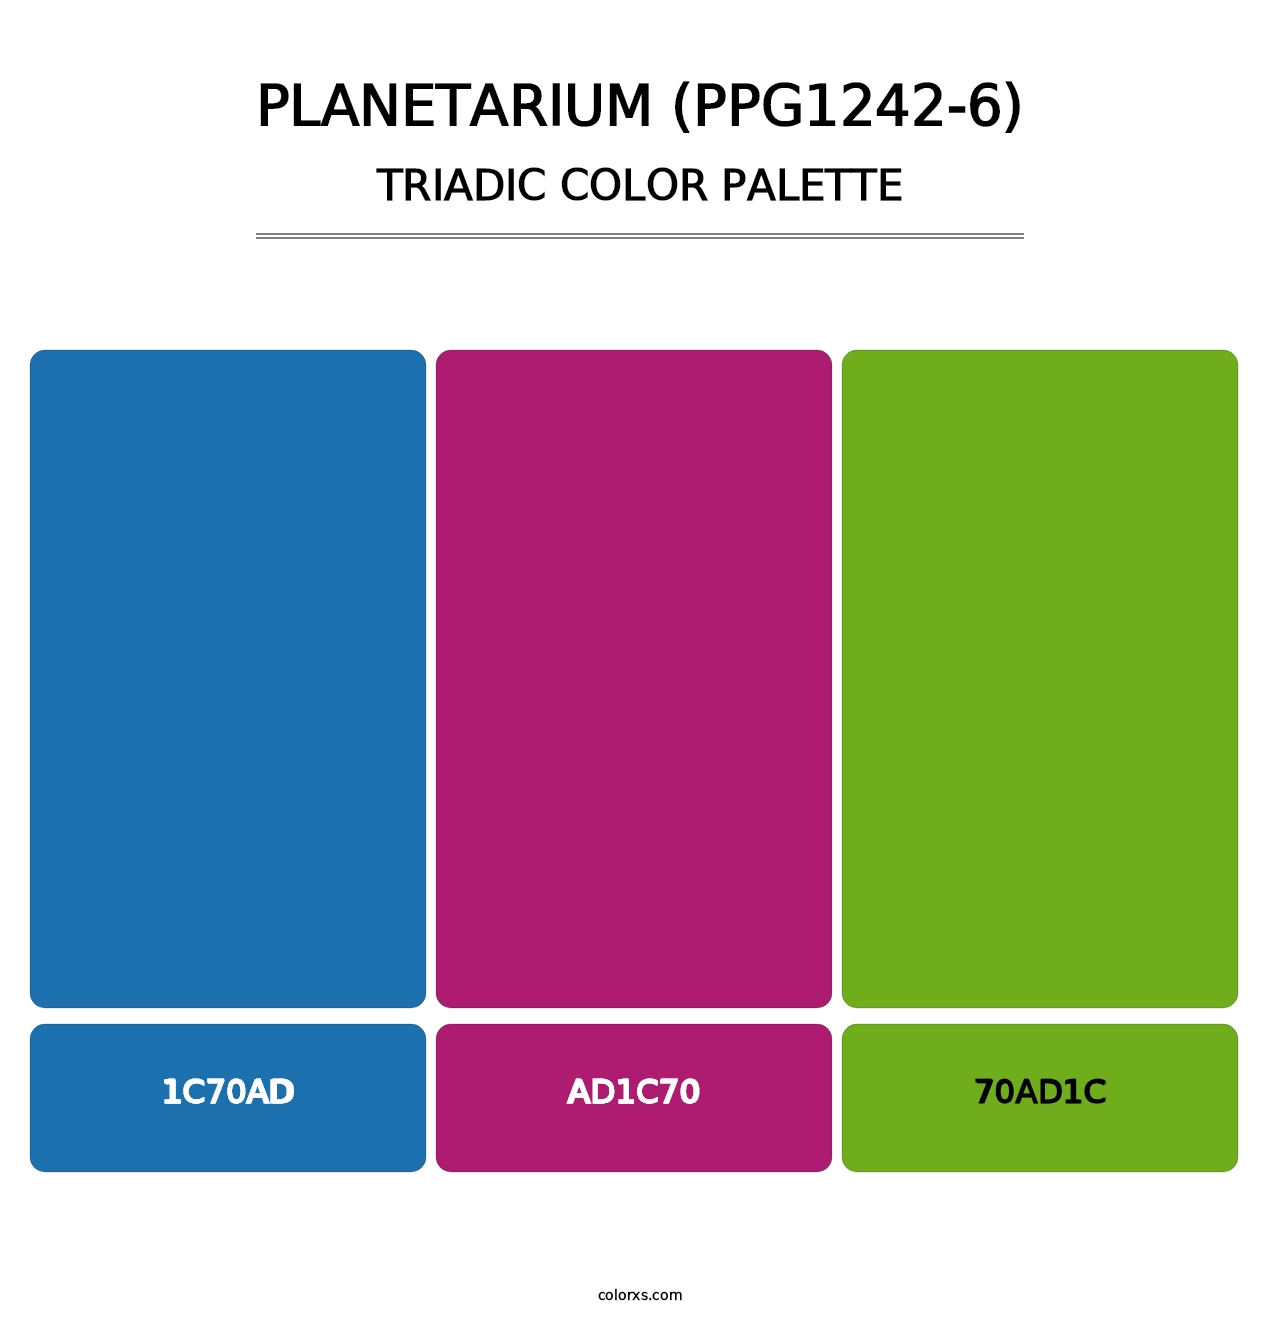 Planetarium (PPG1242-6) - Triadic Color Palette